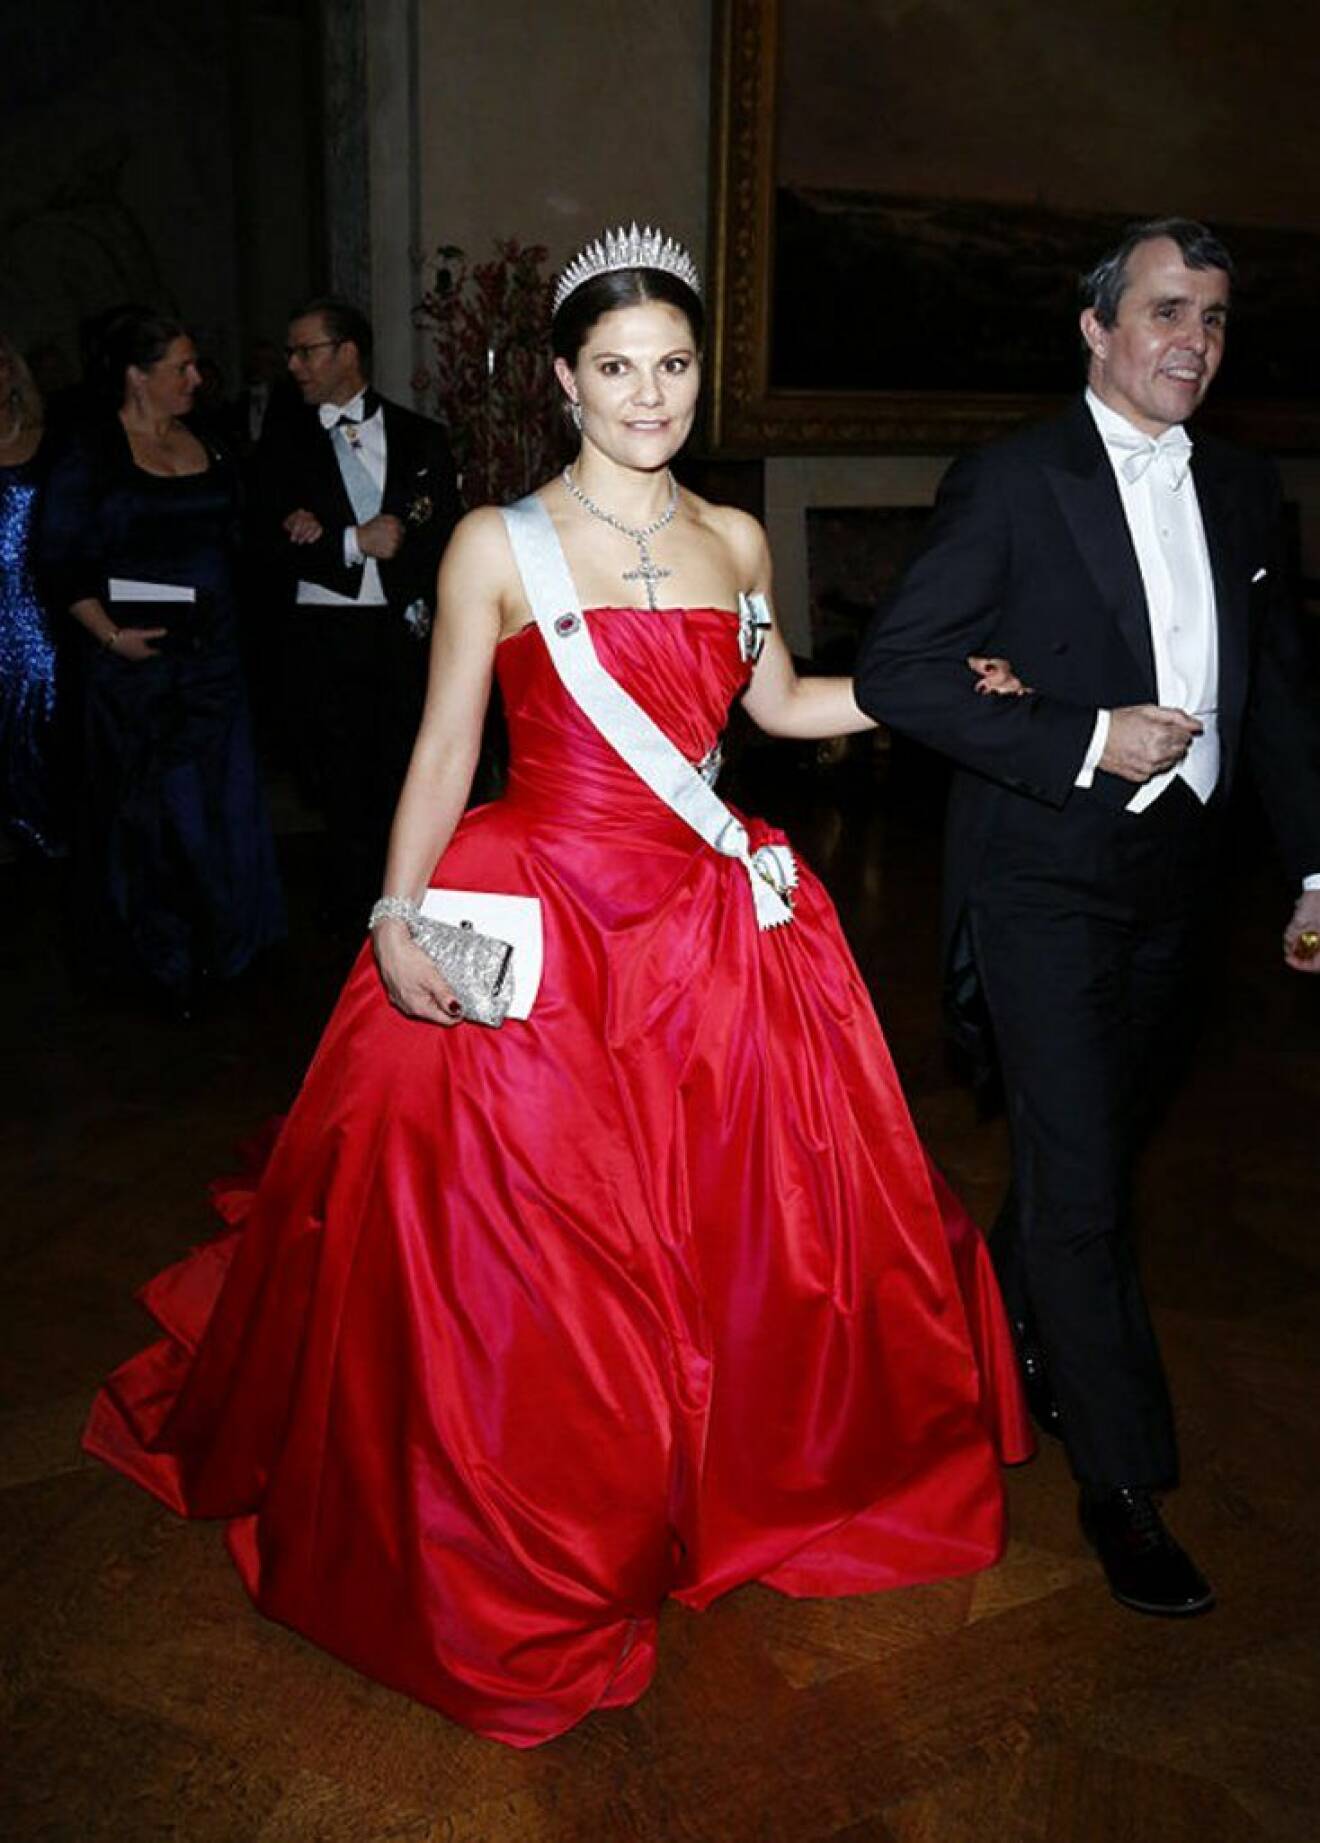  Kronprinsessan Victoria i en röd klänning av Pär Engsheden.